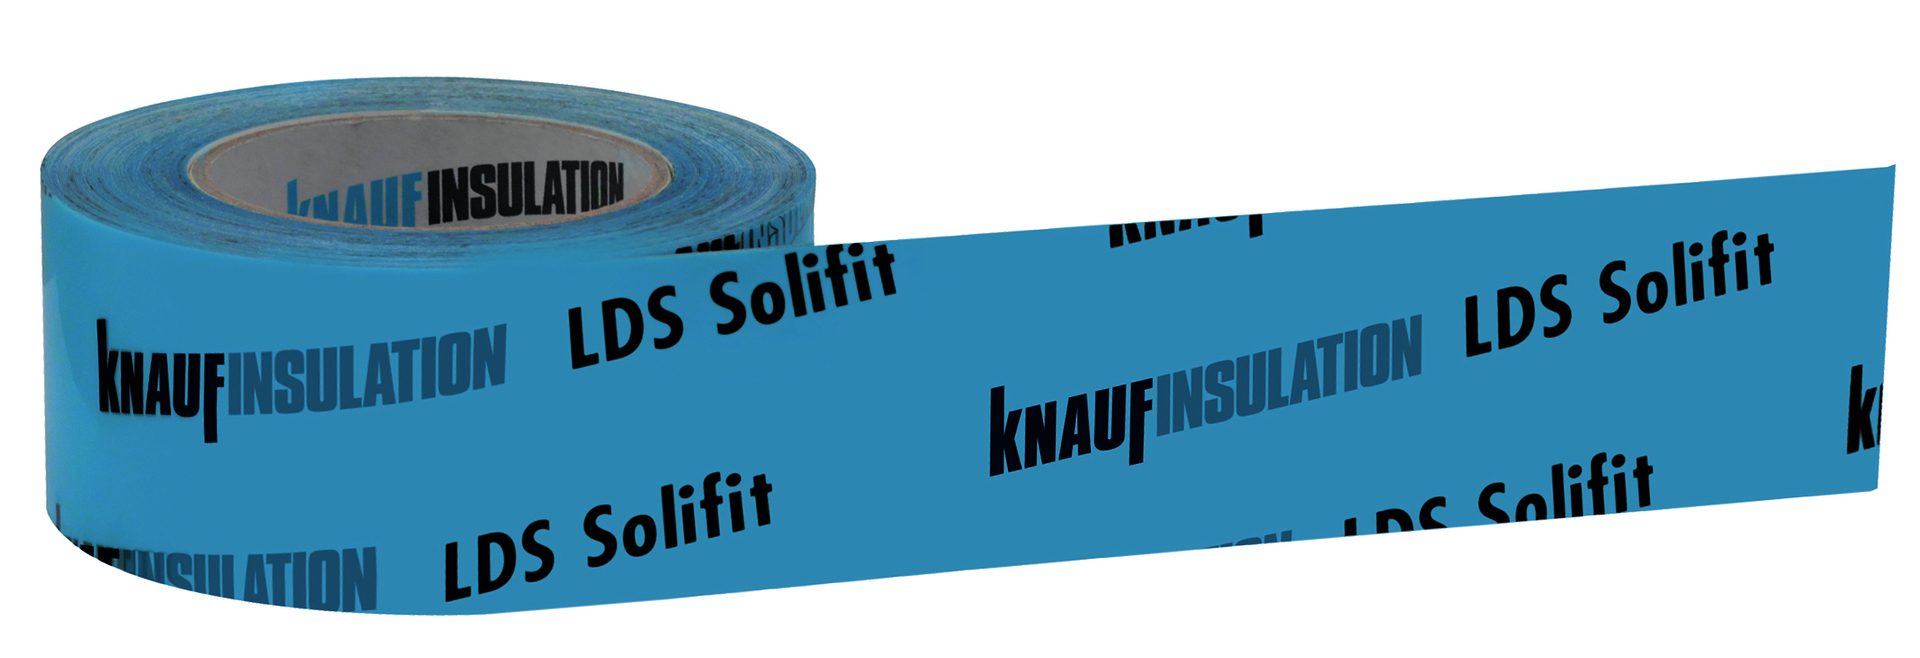 Knauf Insulation LDS Solifit blau S